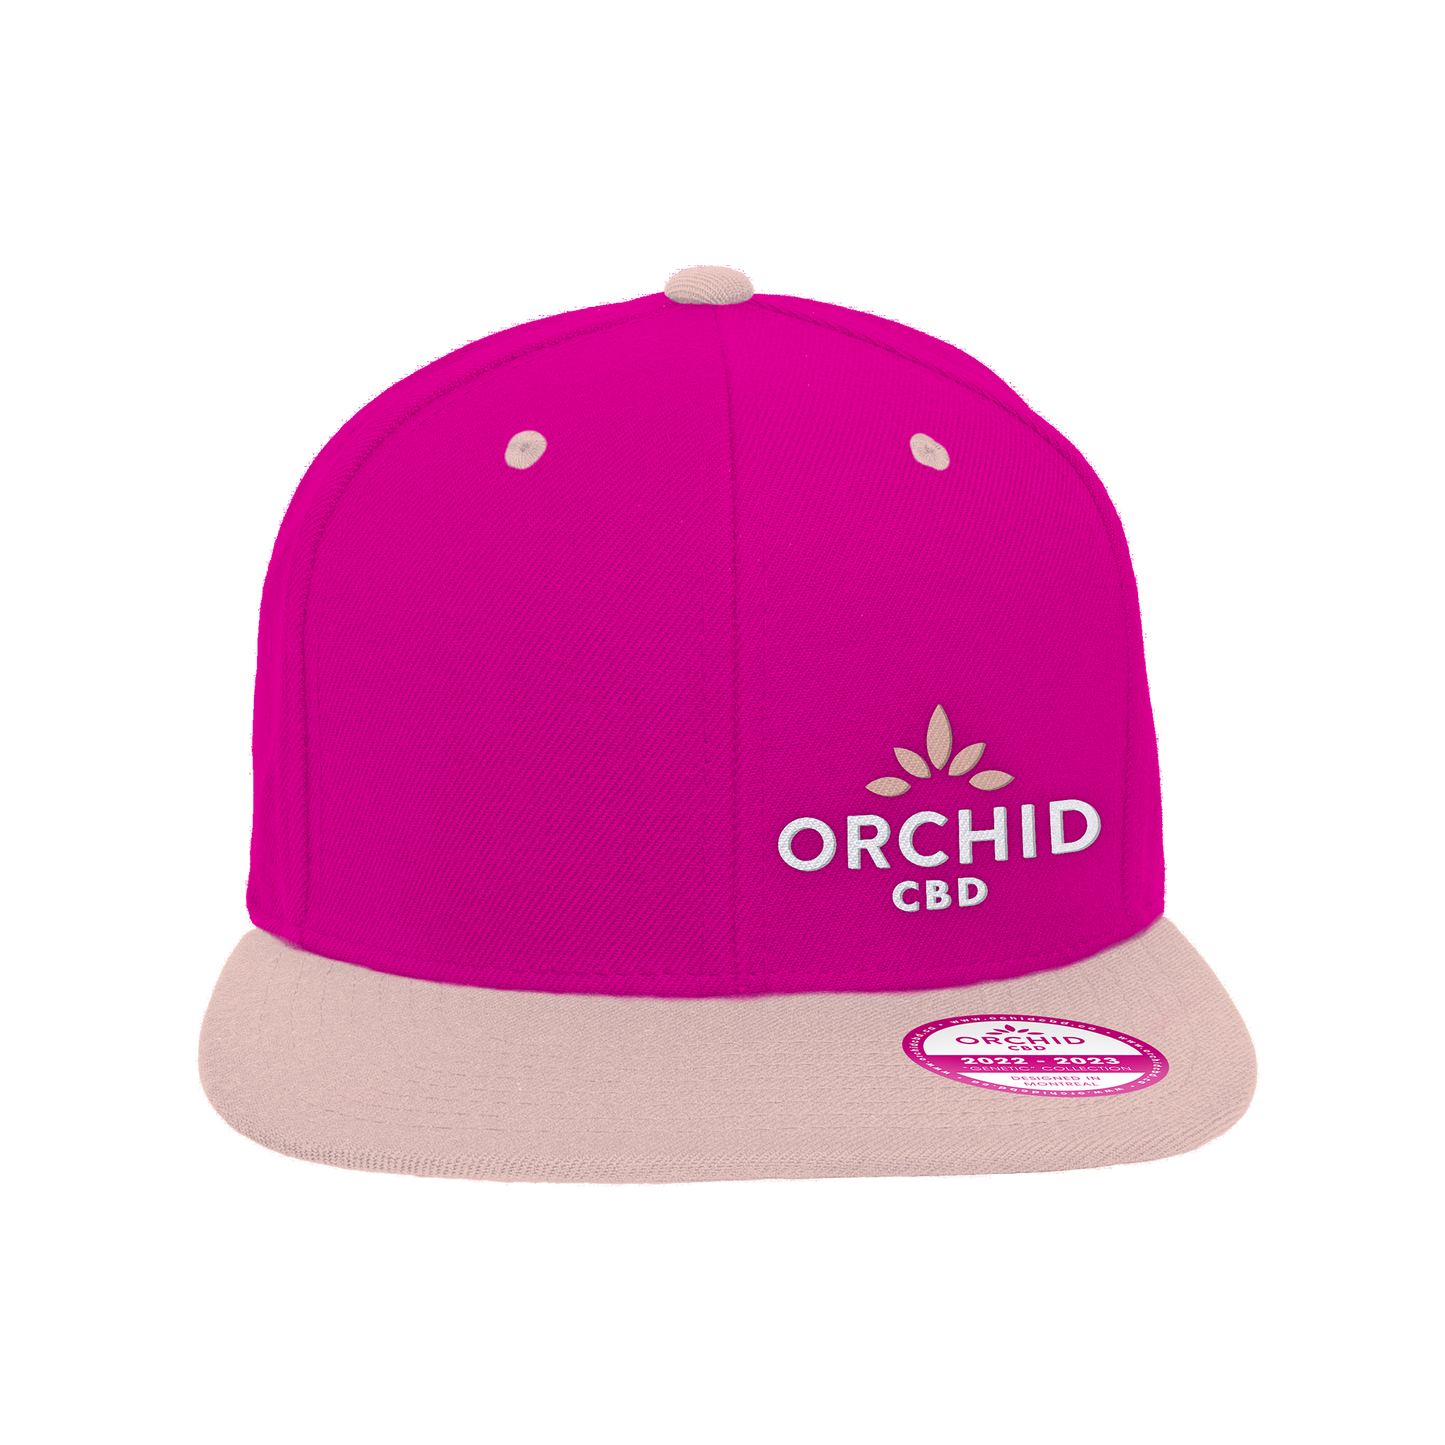 Orchid CBD Cap